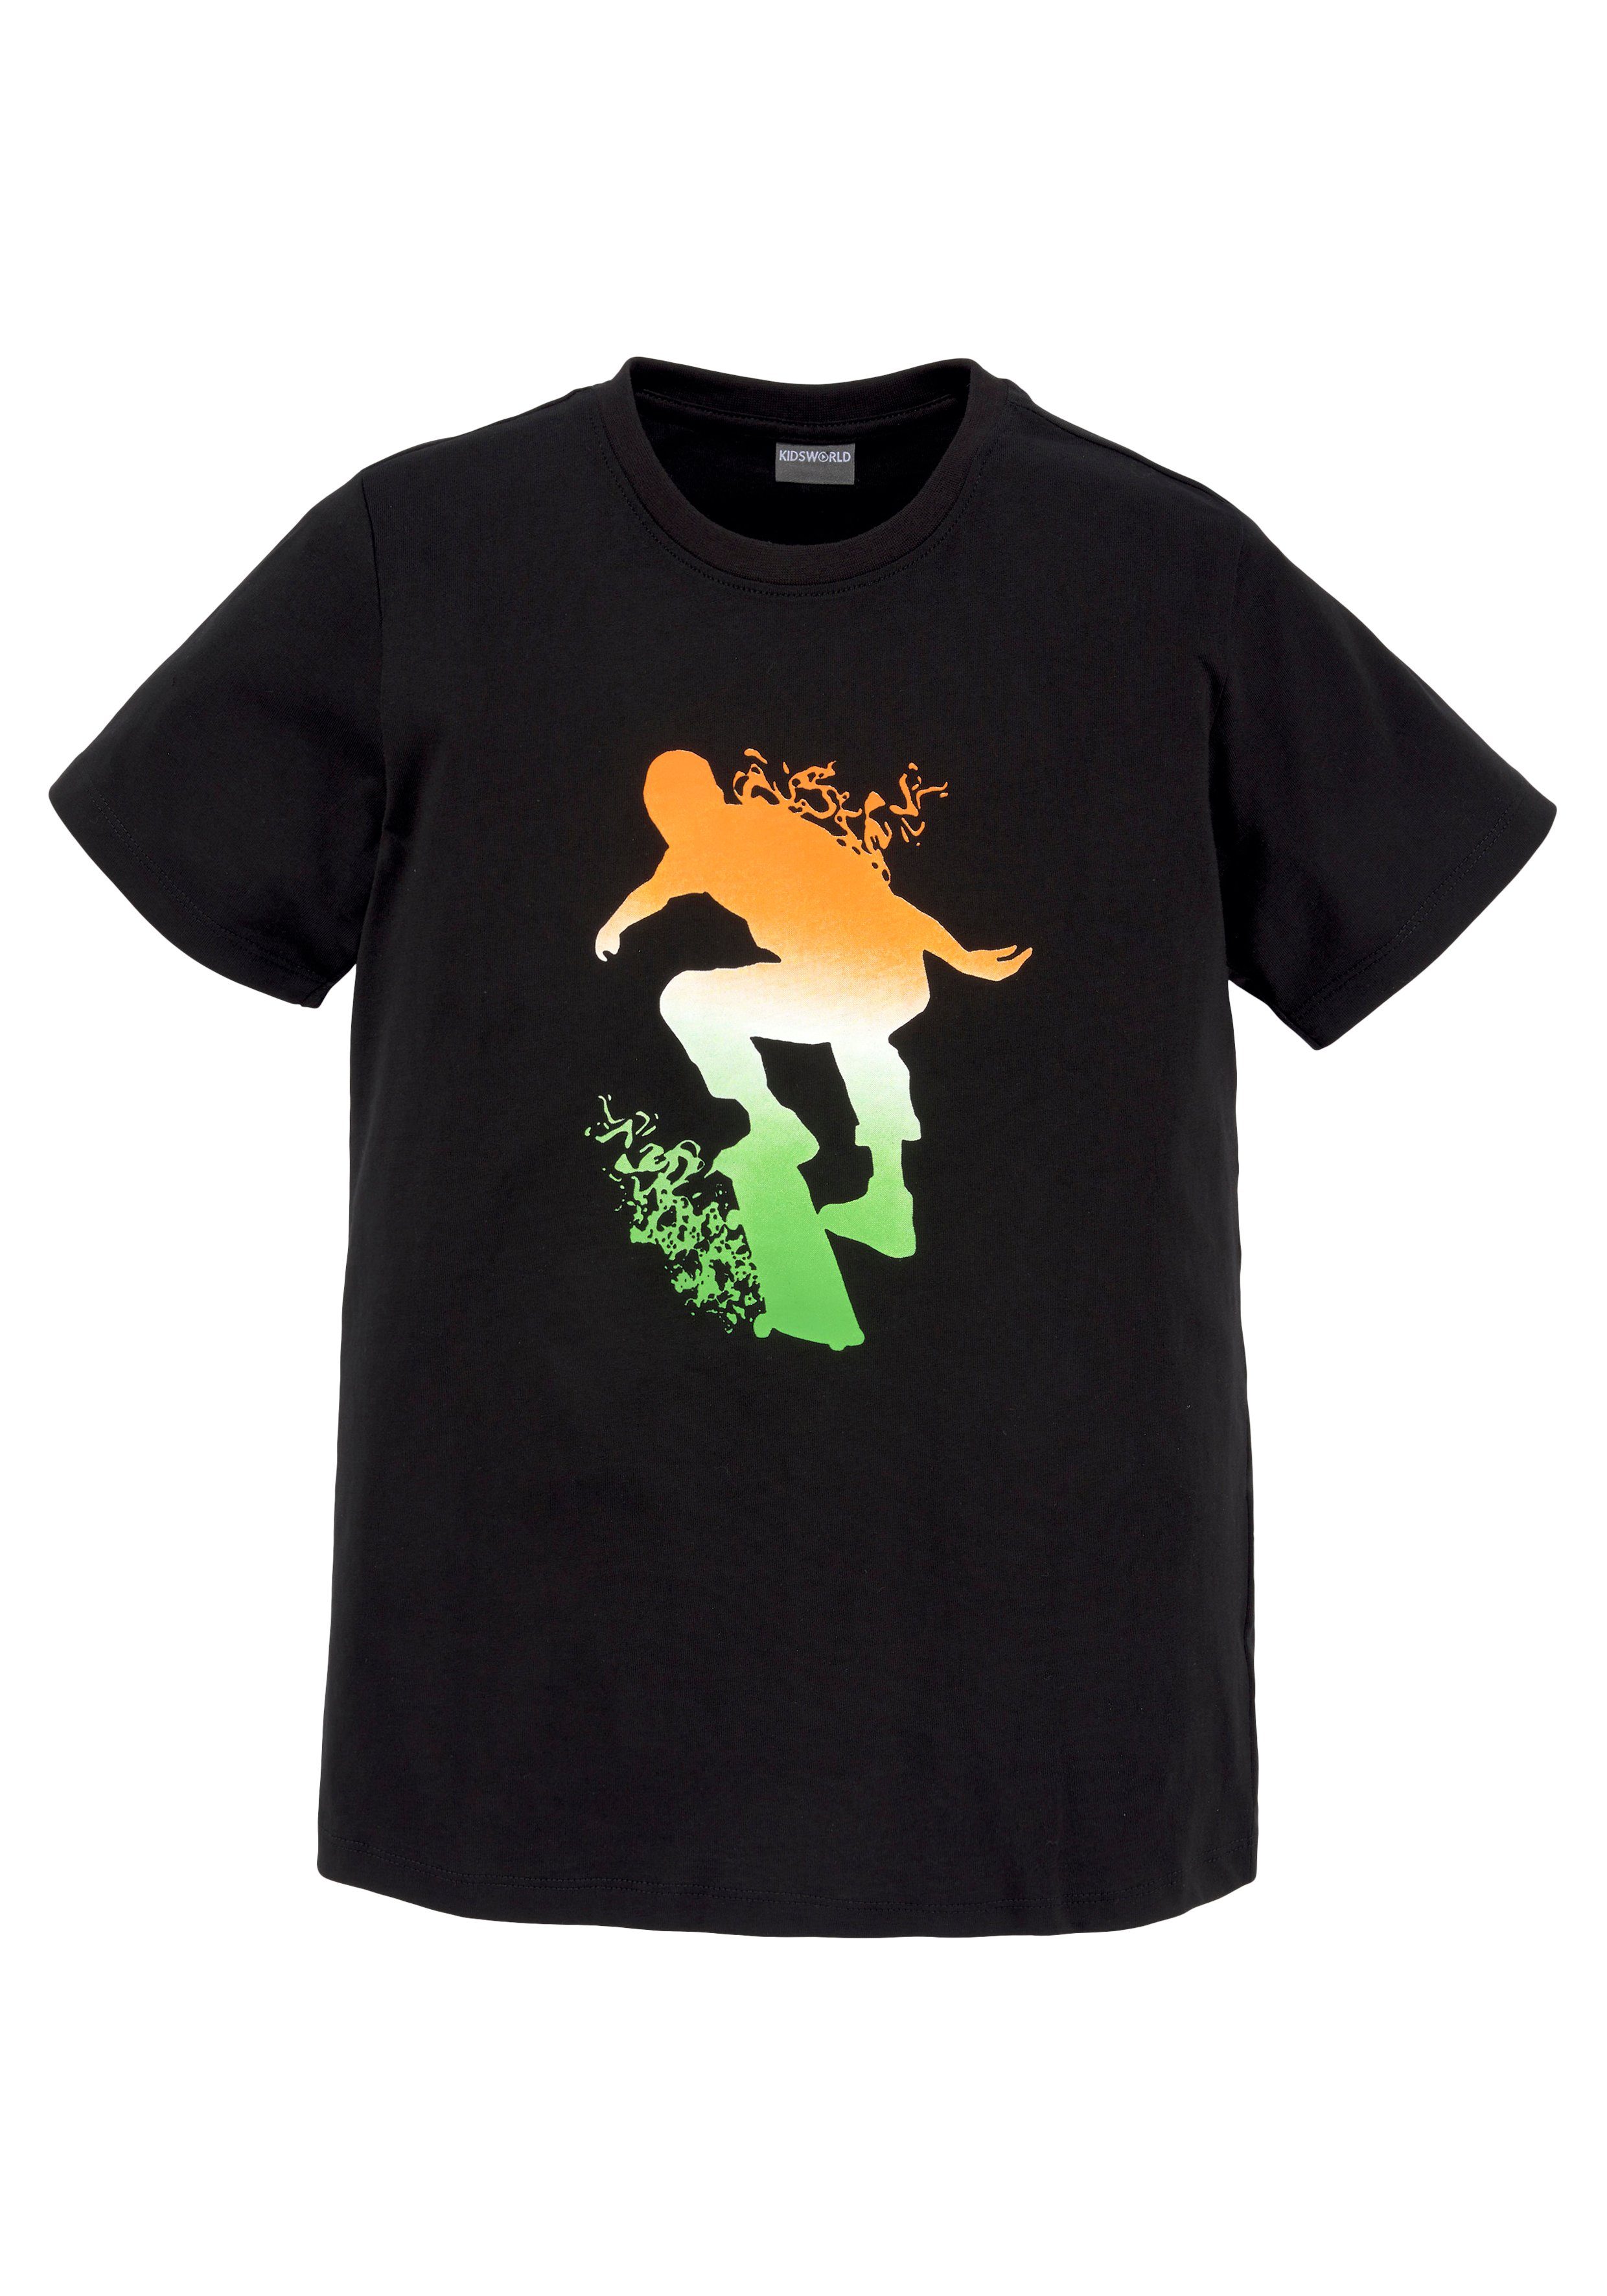 KIDSWORLD T-shirt Skating Print snel gevonden | OTTO | T-Shirts